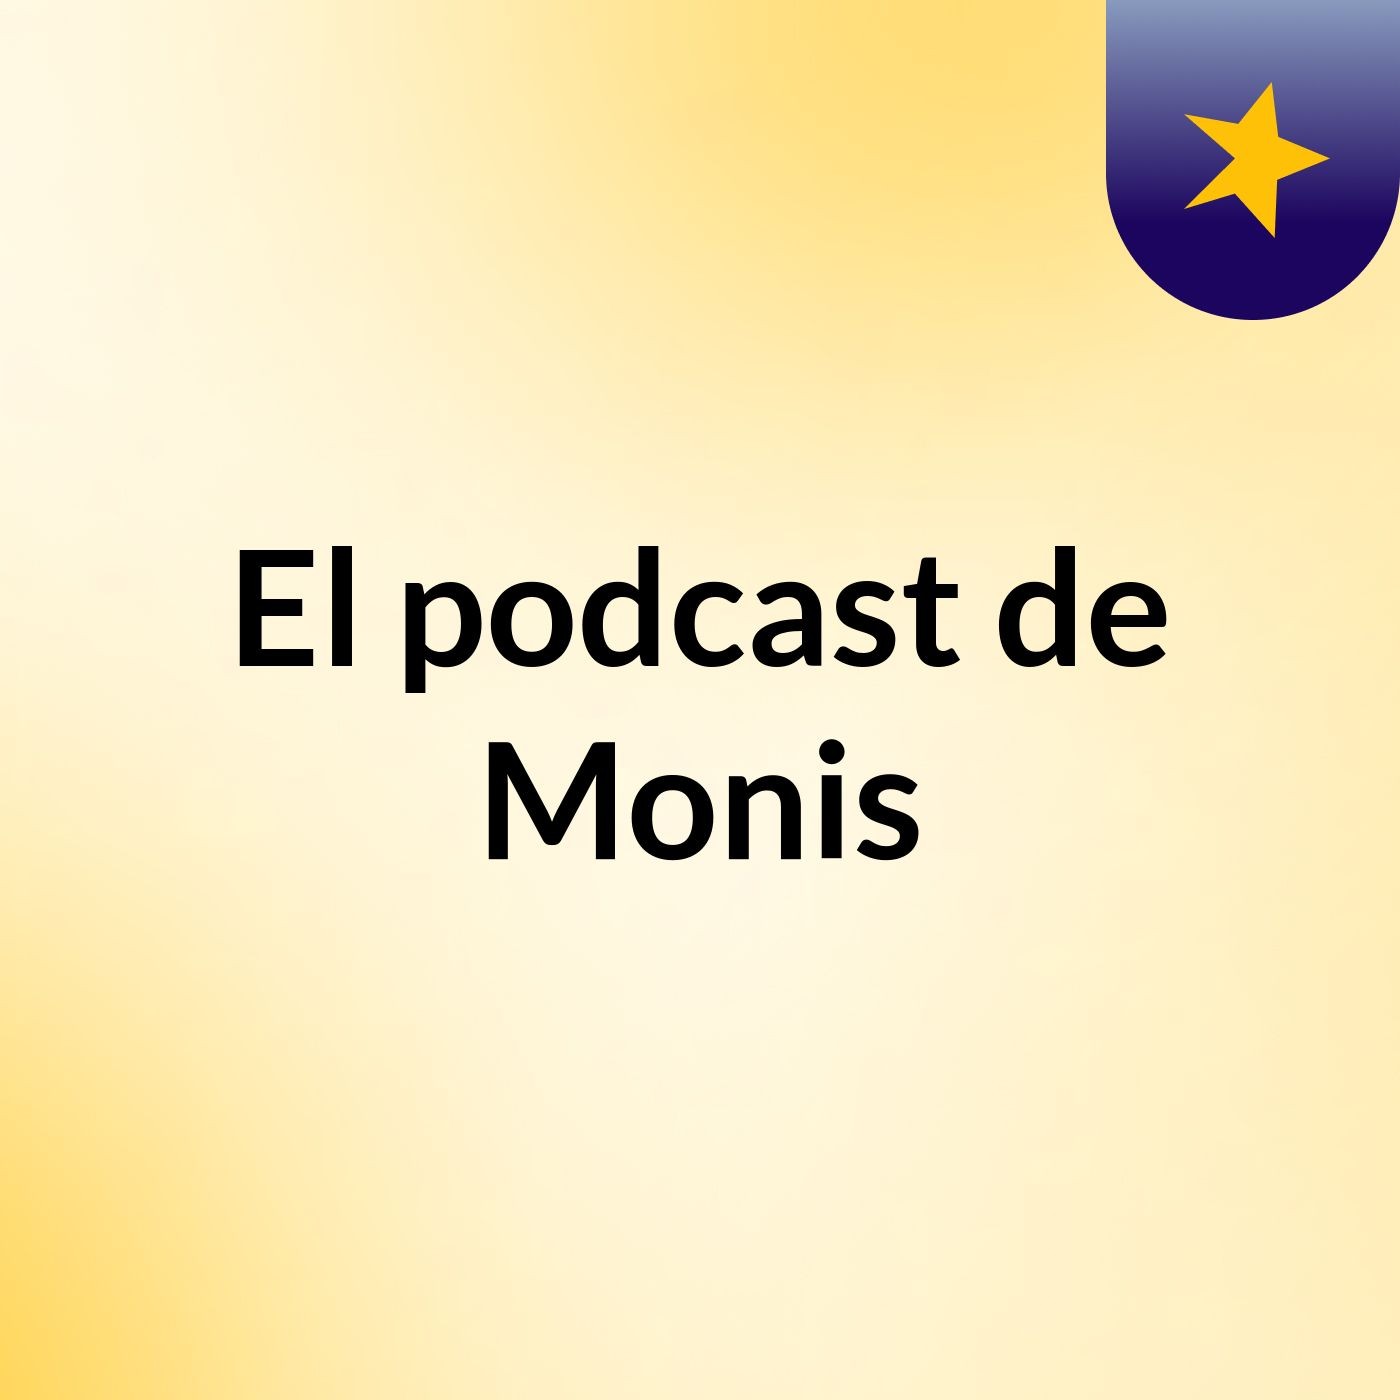 Episodio 5 - El podcast de Monis